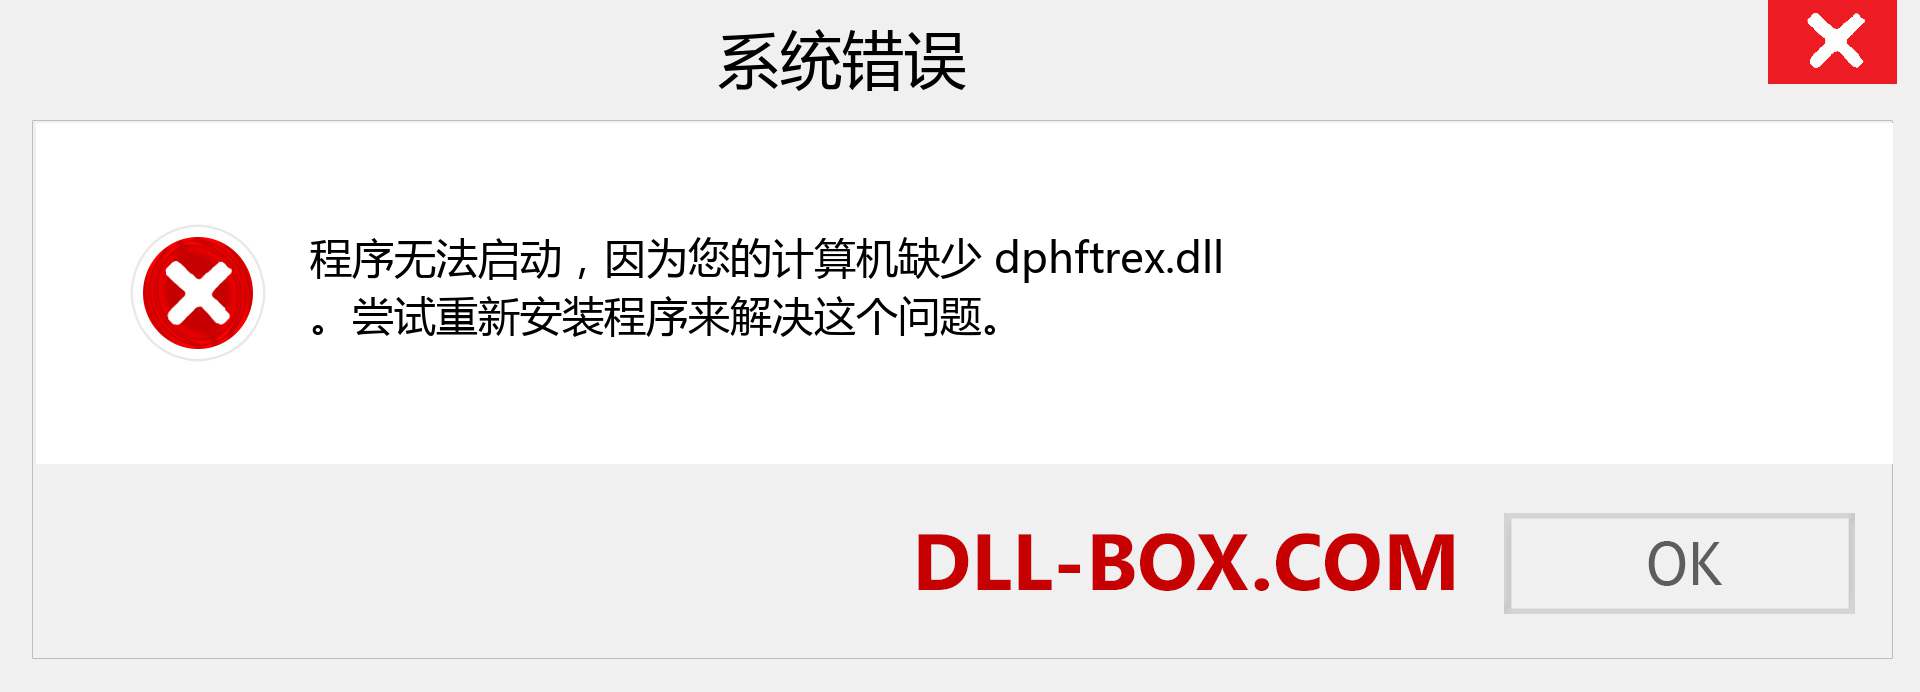 dphftrex.dll 文件丢失？。 适用于 Windows 7、8、10 的下载 - 修复 Windows、照片、图像上的 dphftrex dll 丢失错误